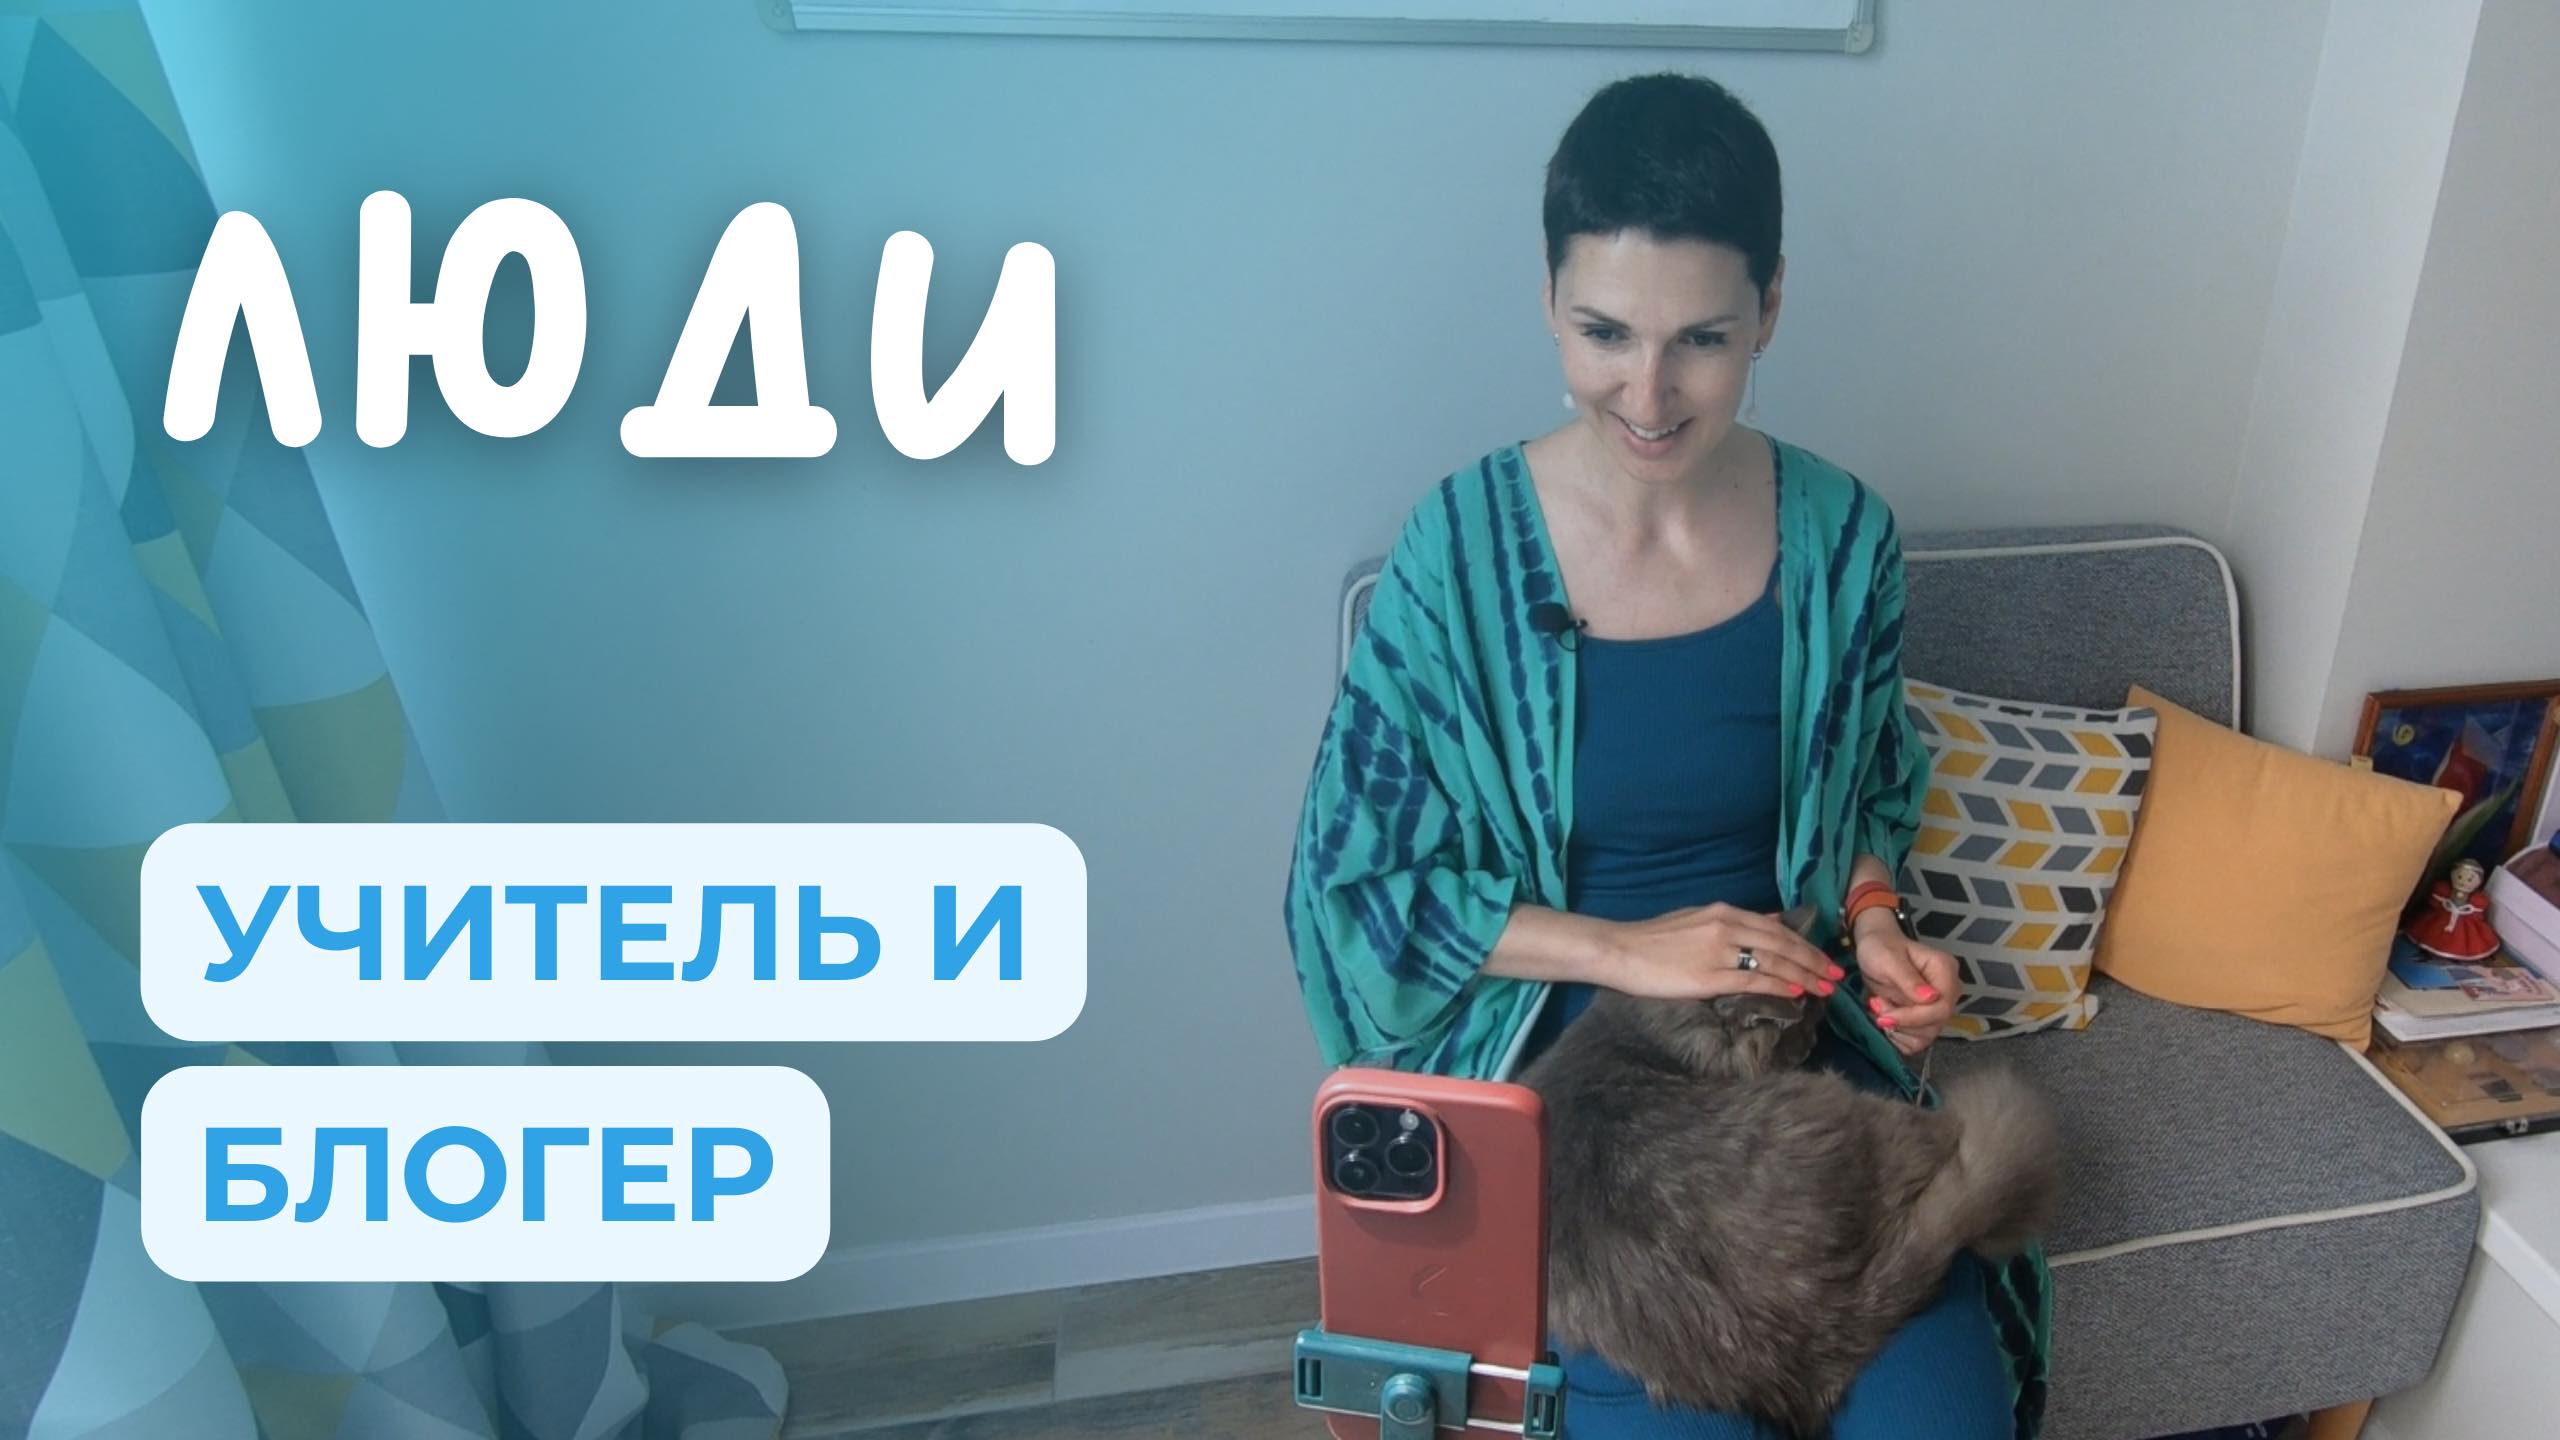 Учитель русского языка и блогер со 100 000 подписчиками | ЛЮДИ